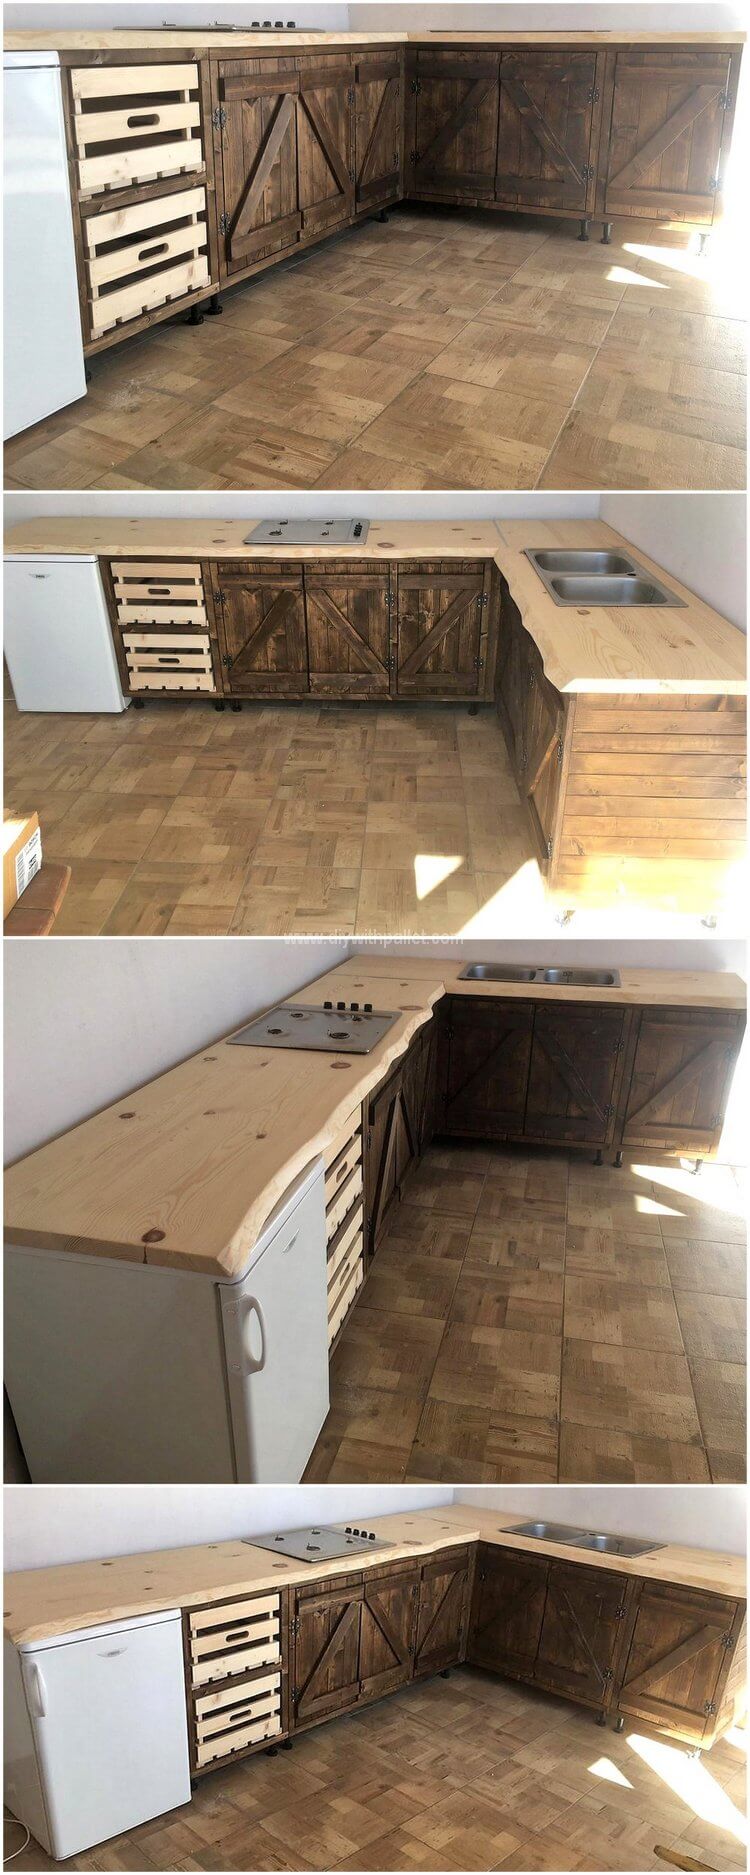 wooden pallet kitchen plan